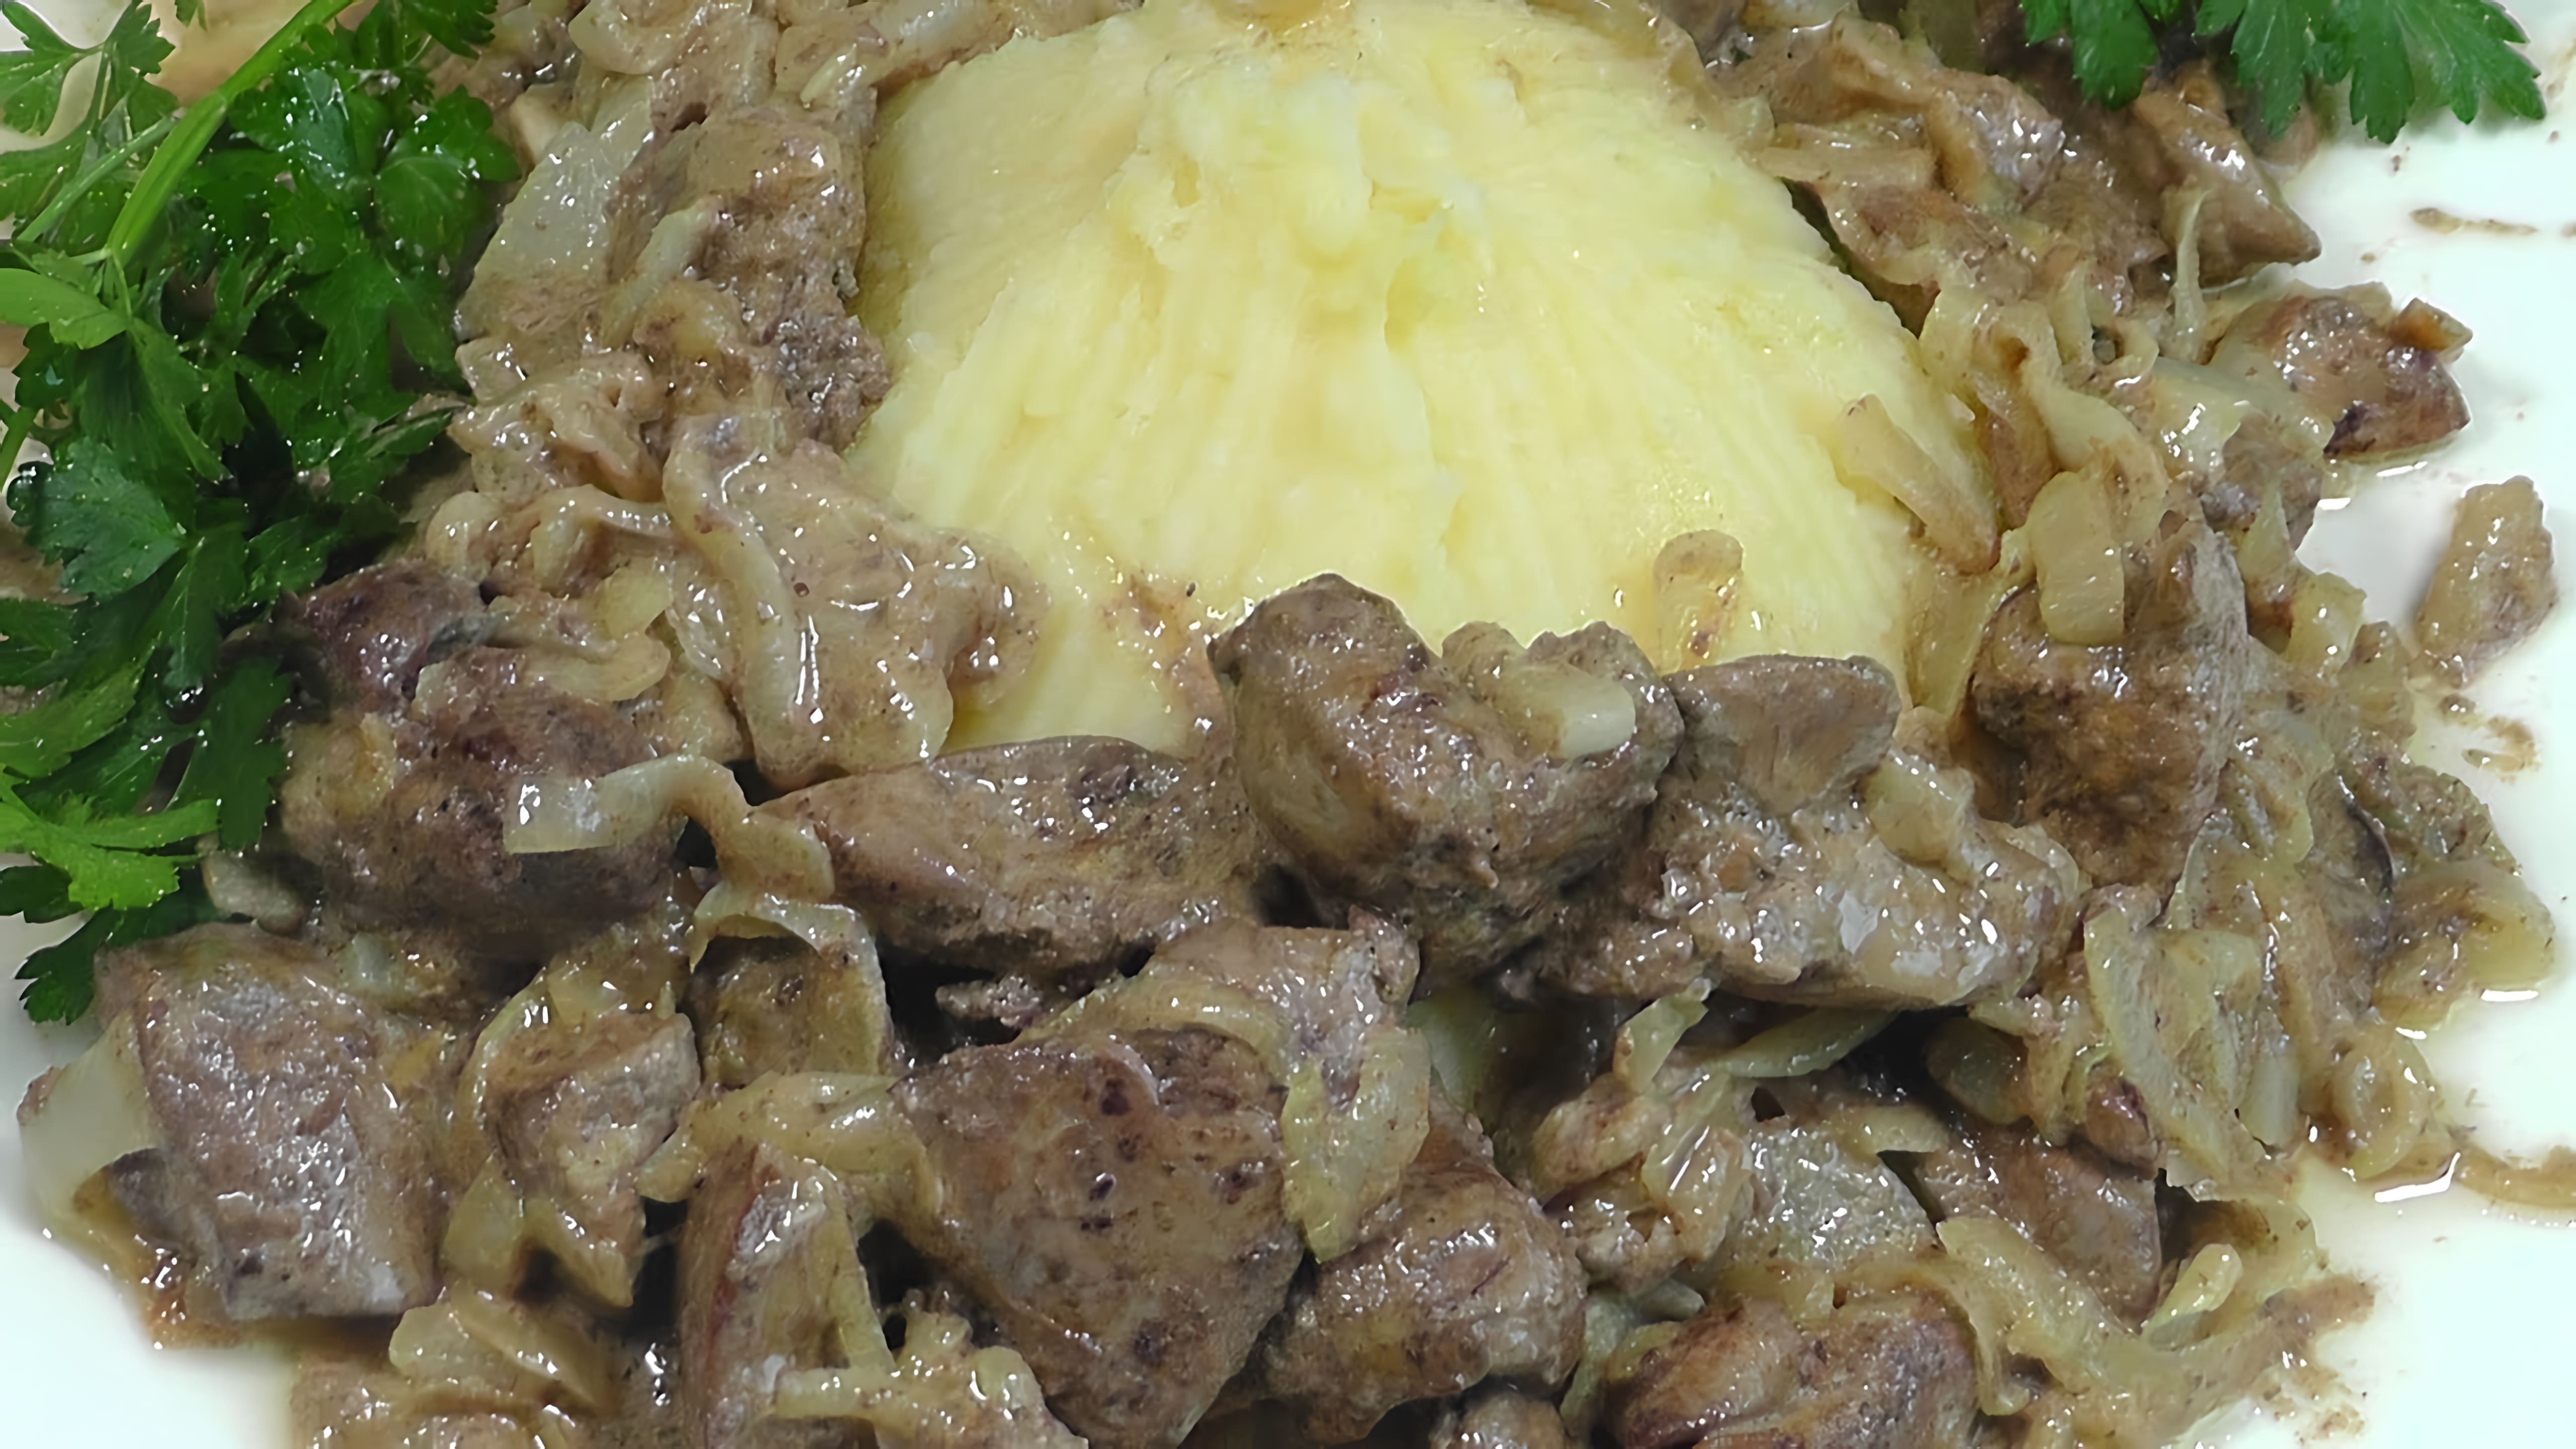 В этом видео демонстрируется процесс приготовления вкусного и простого блюда - куриной печени с луком в сметане